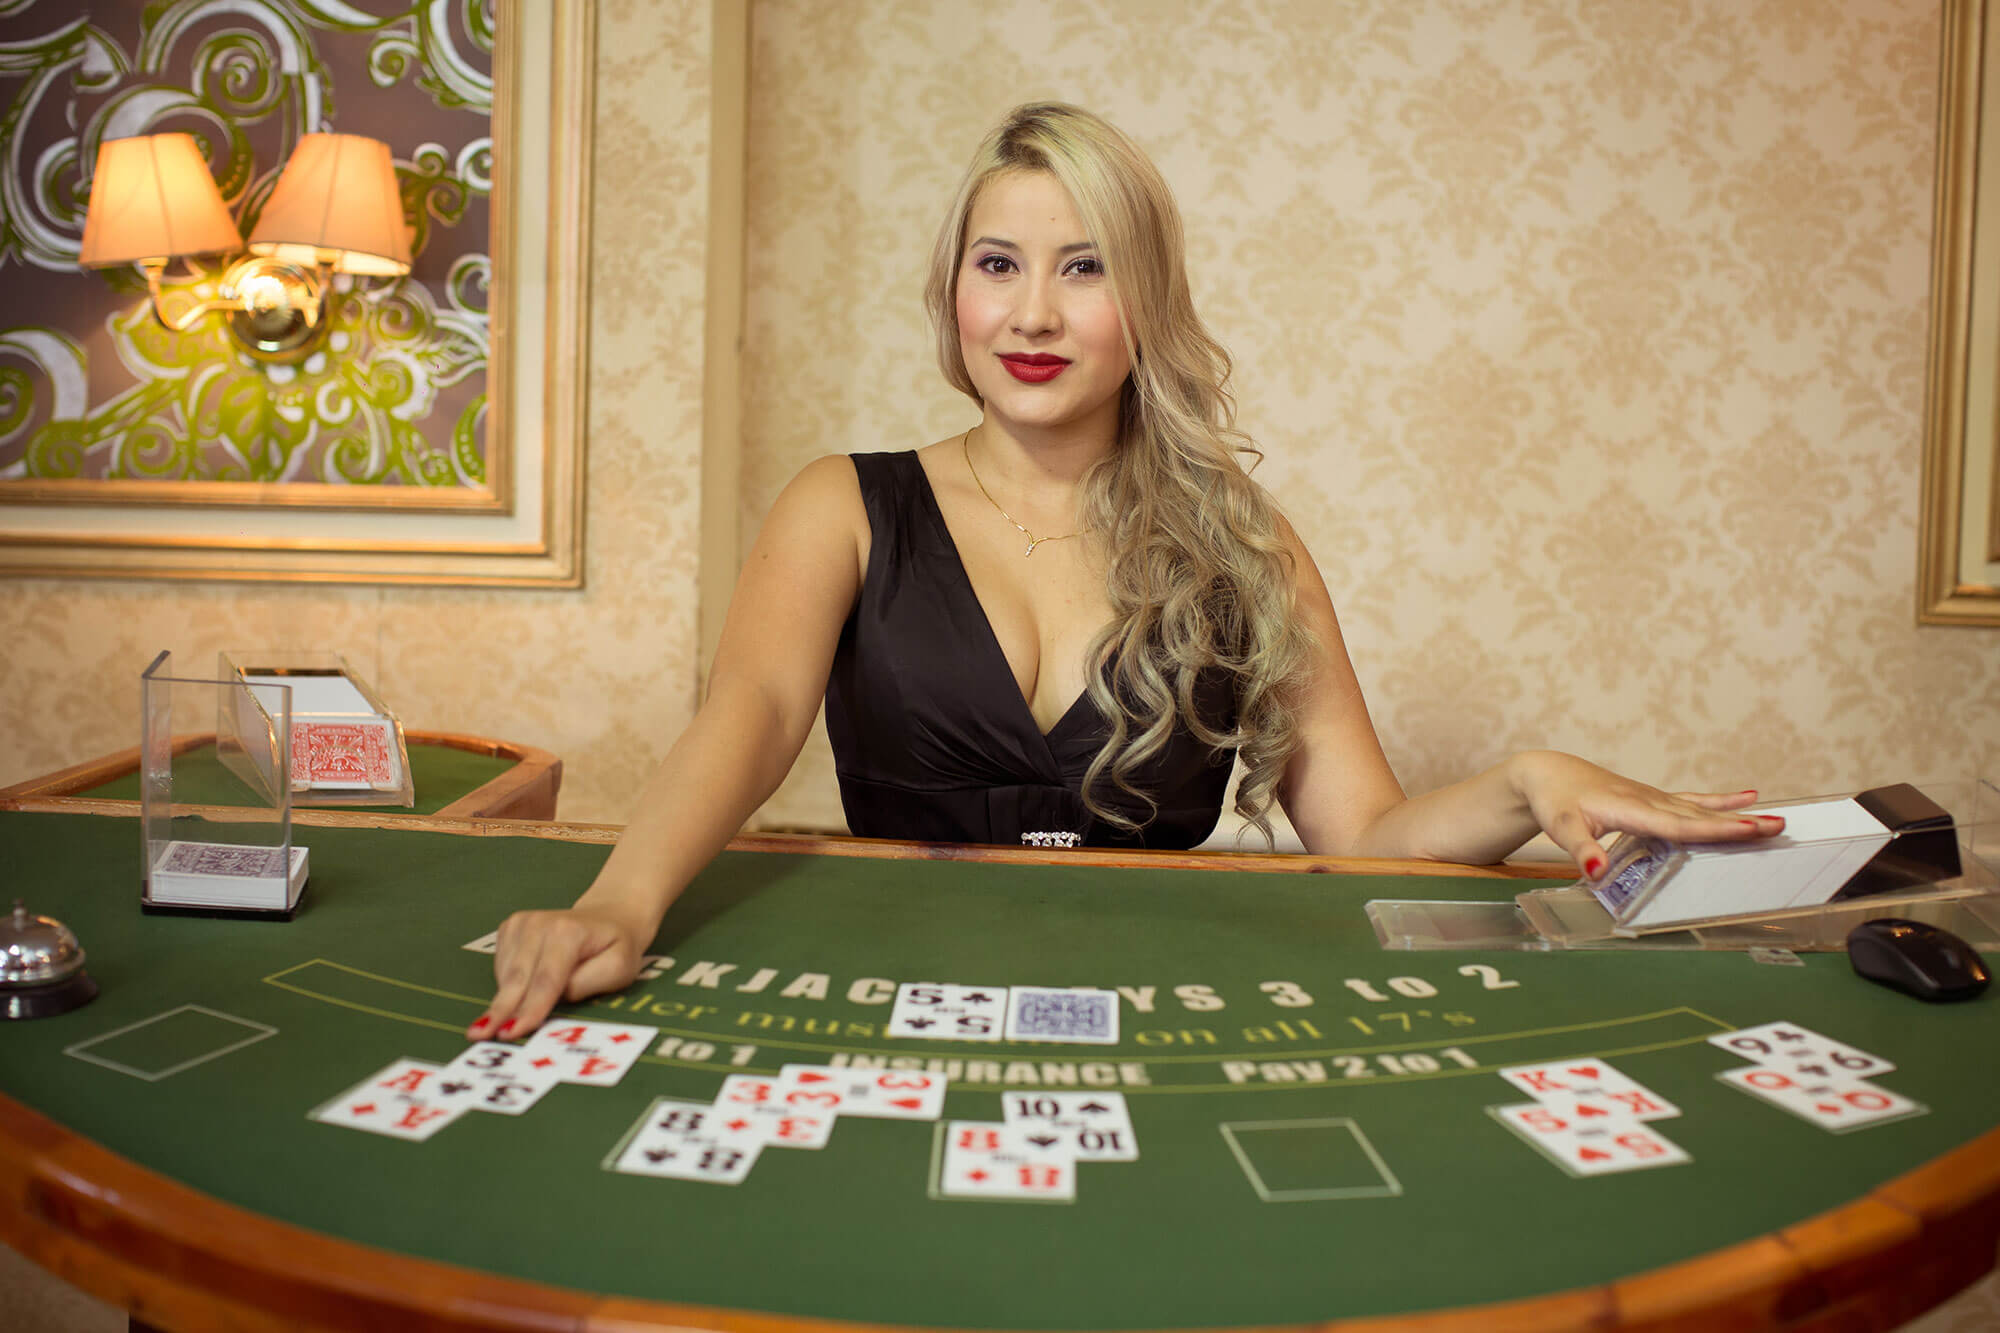 blackjack-en-vivo-con-crupiers-reales-los-casinos-en-l-nea